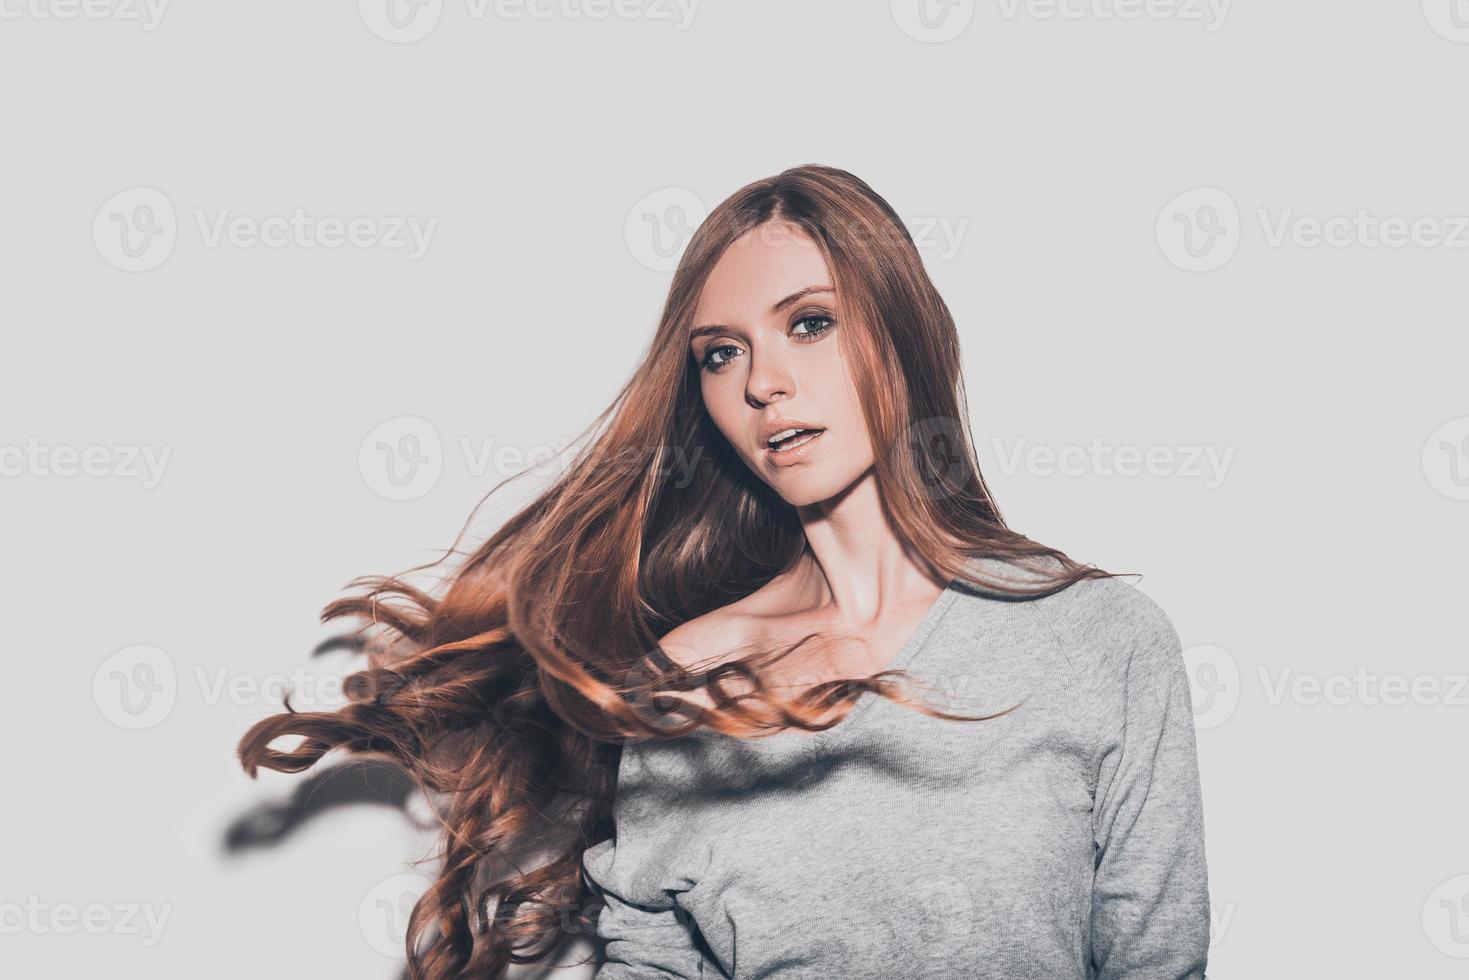 cabello en movimiento. retrato de una joven atractiva con el pelo despeinado mirando a la cámara mientras se enfrenta a un fondo gris foto